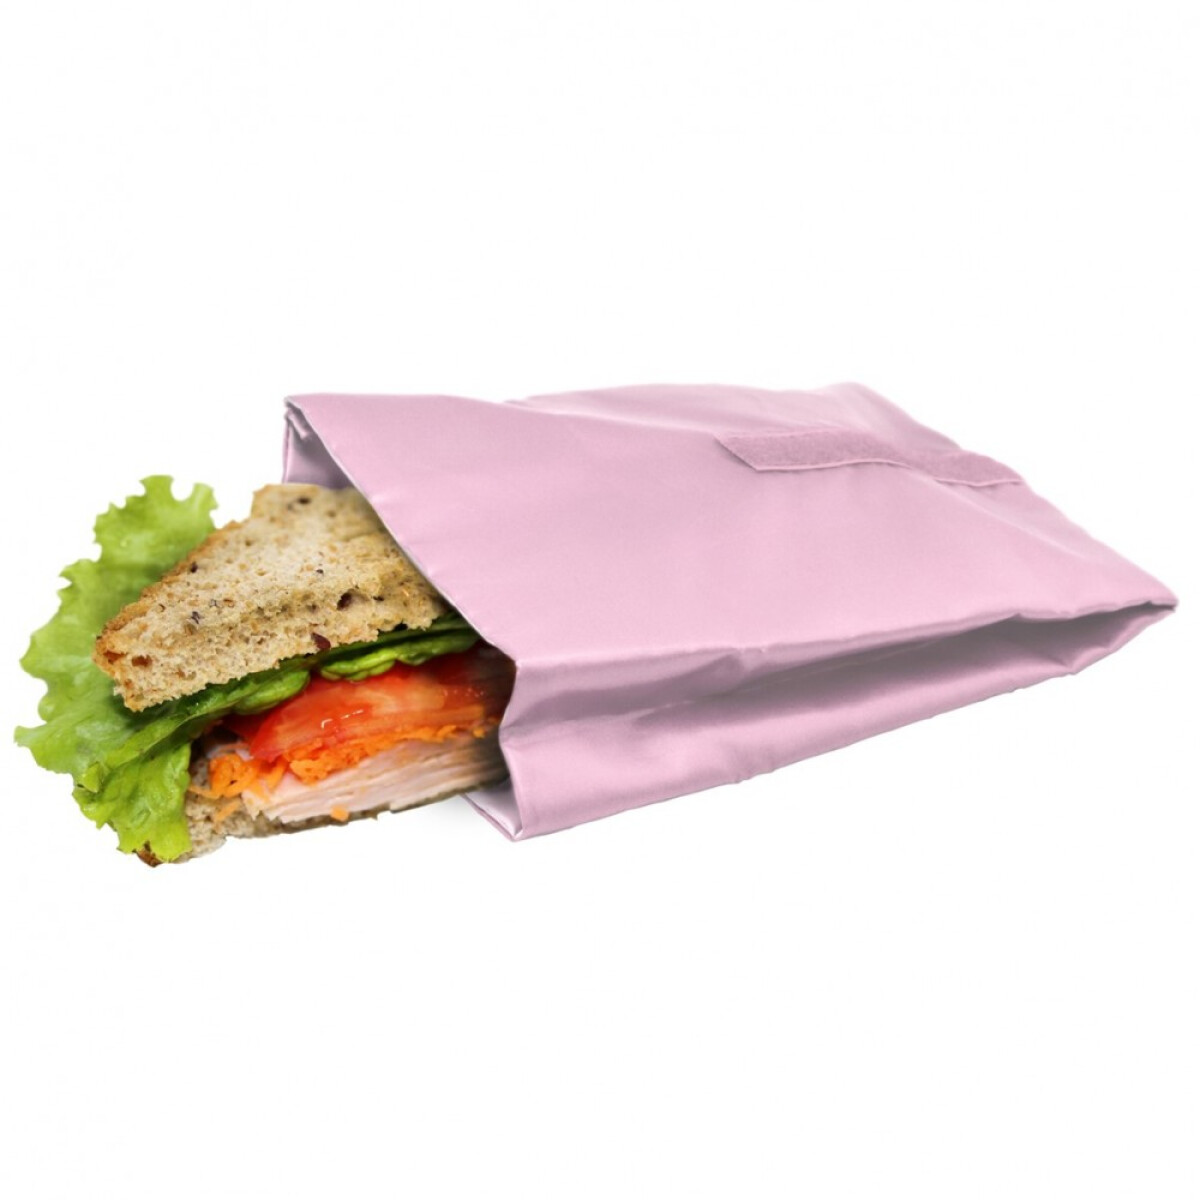 Джоб / чанта за сандвичи и храна Nerthus - розов цвят